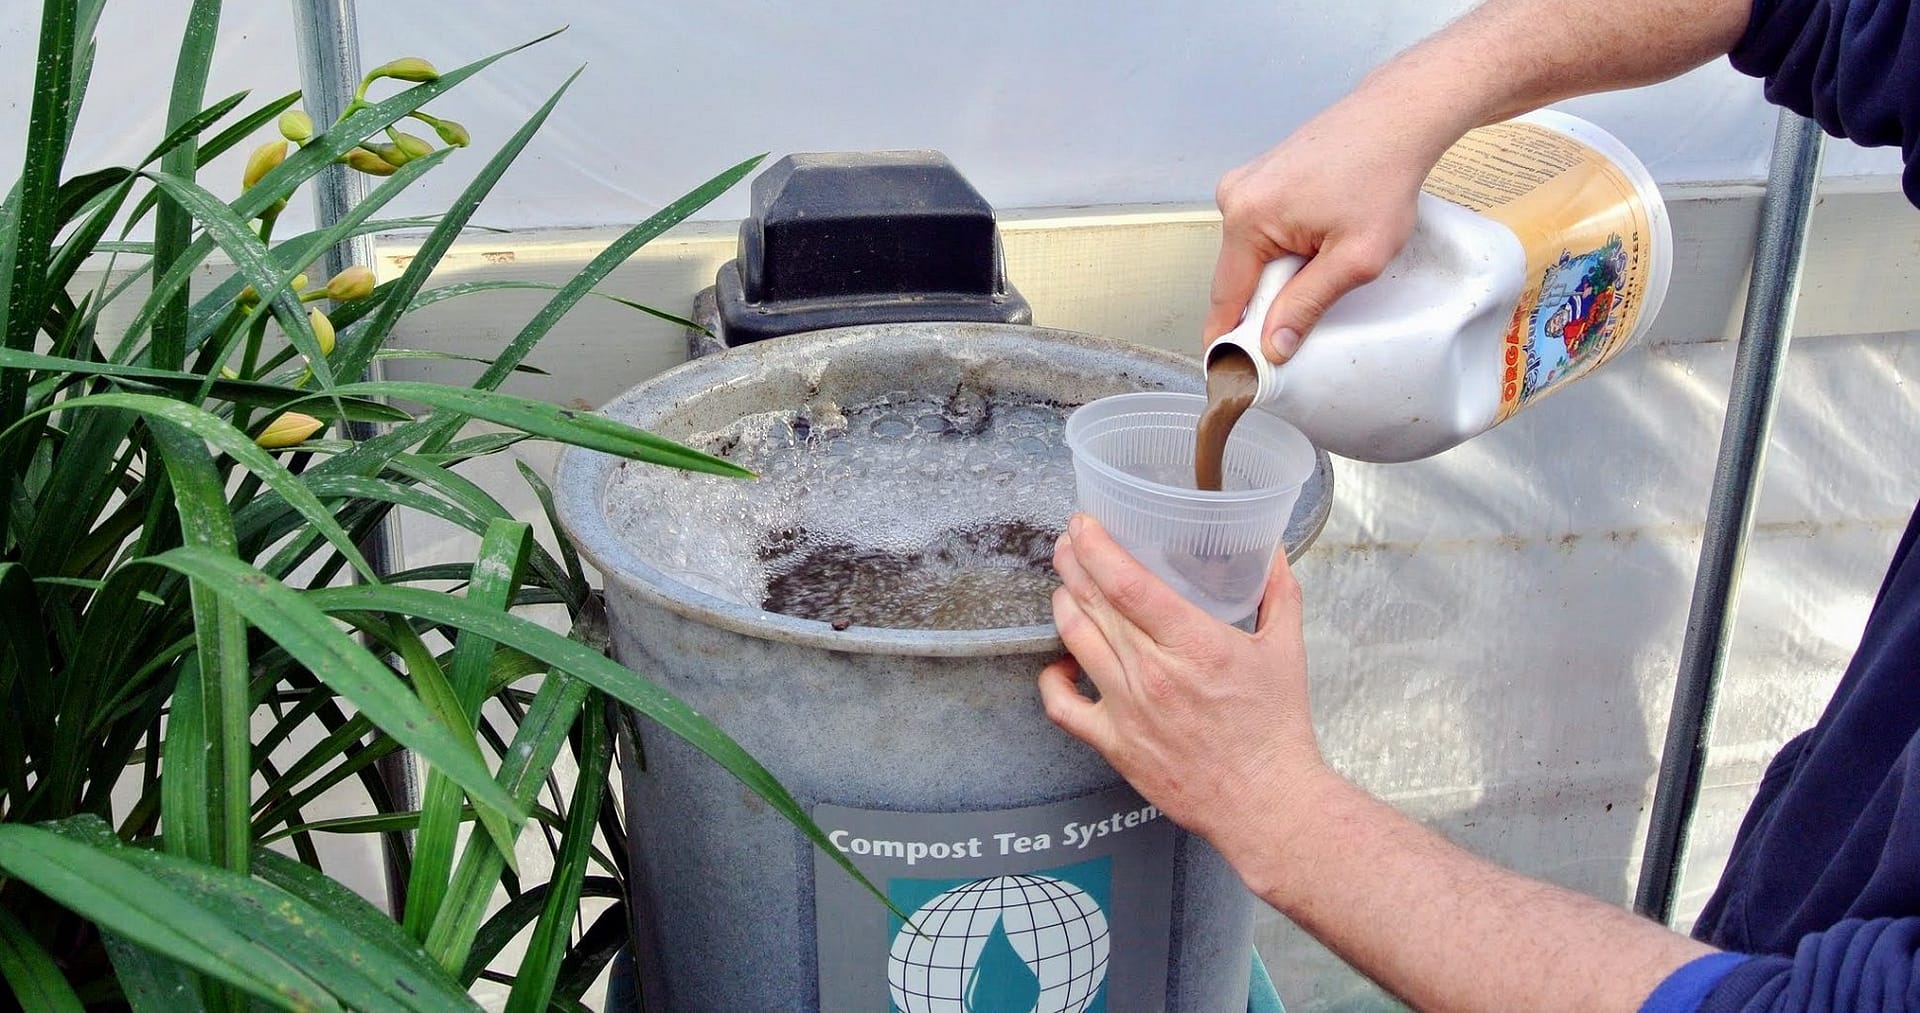 How To Make Compost Tea